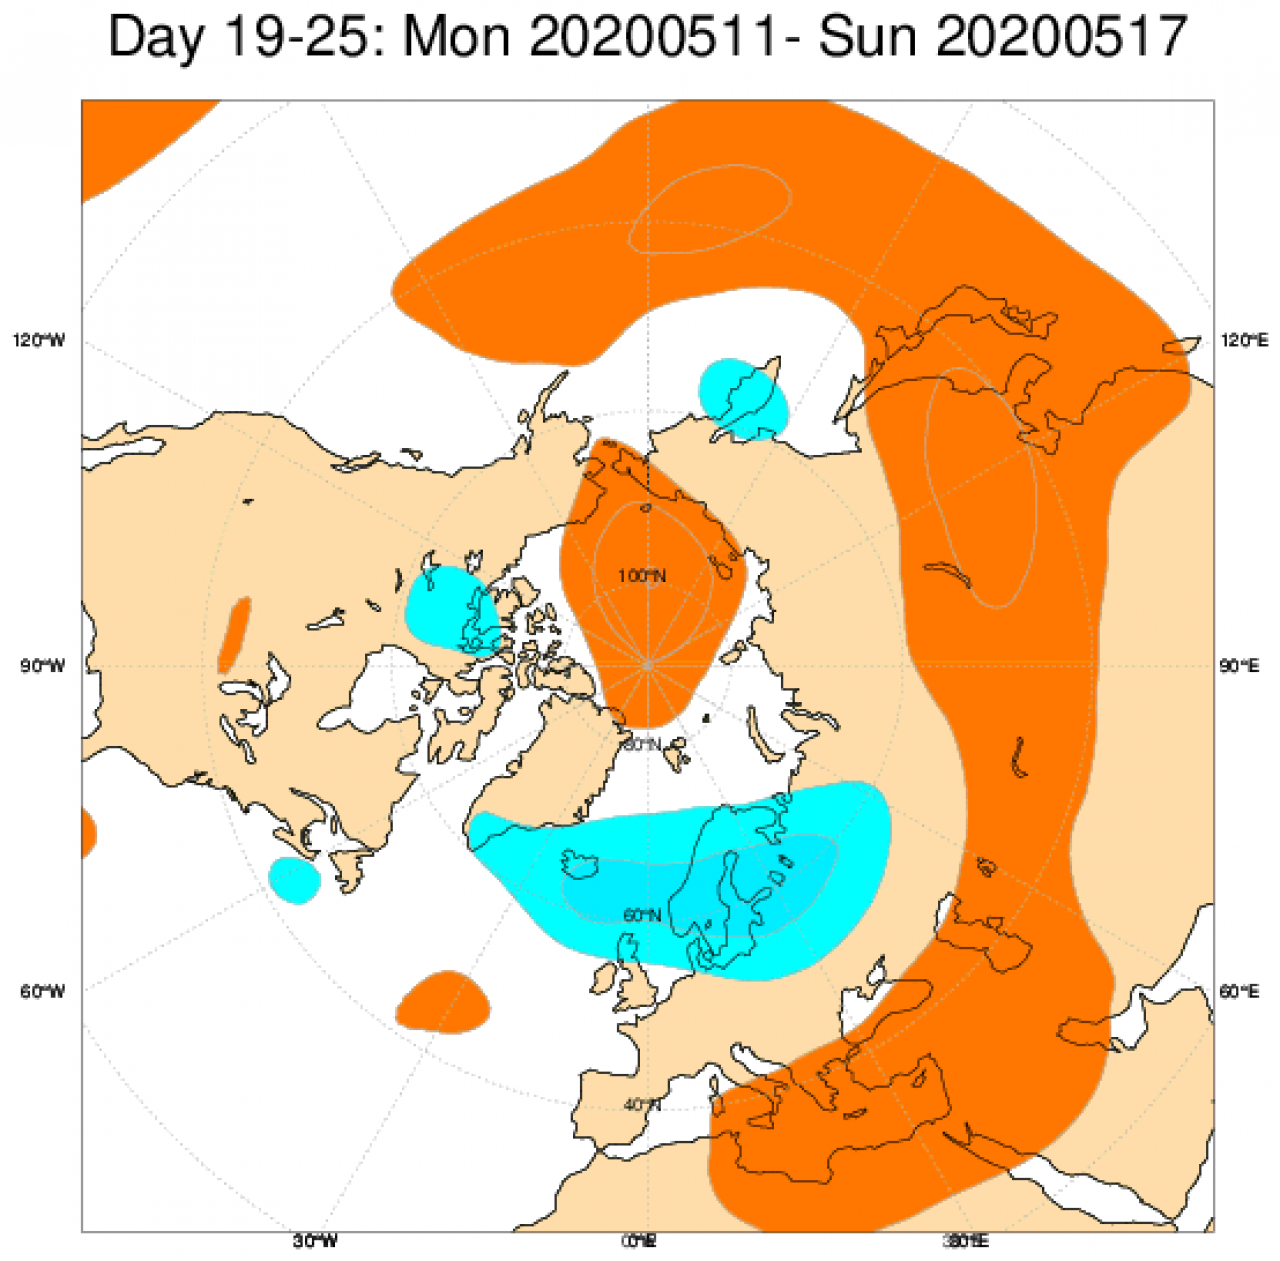 Le anomalie di geopotenziale a 500 previste per il periodo 11-17 maggio secondo il modello ECMWF